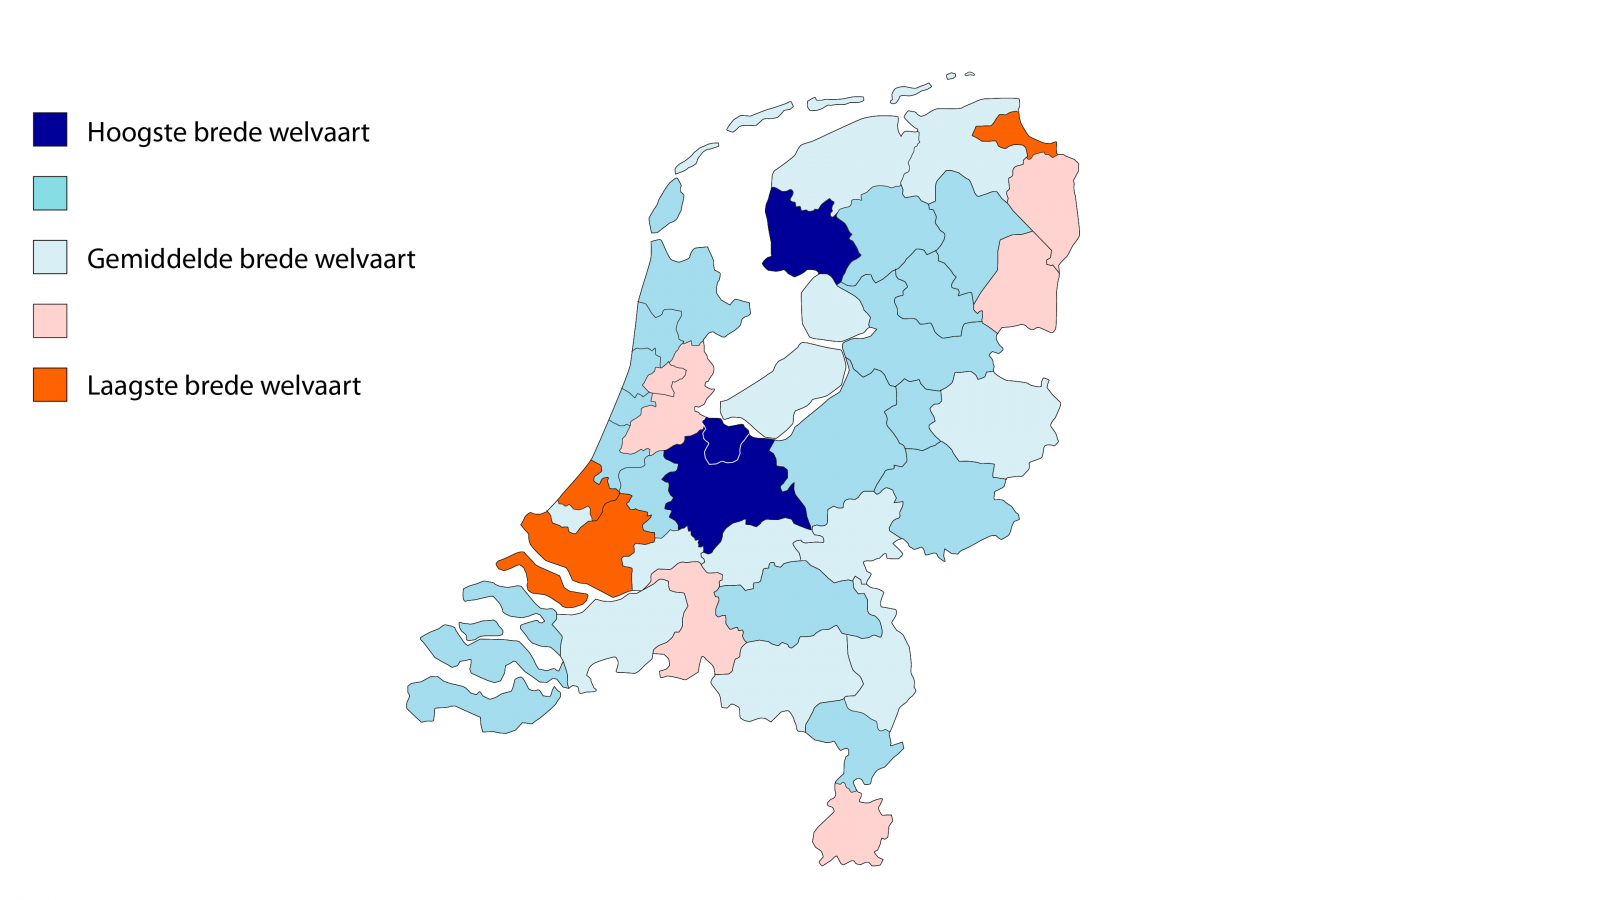 Kaart toont brede welvaart in 40 Nederlandse regio’s in 2019